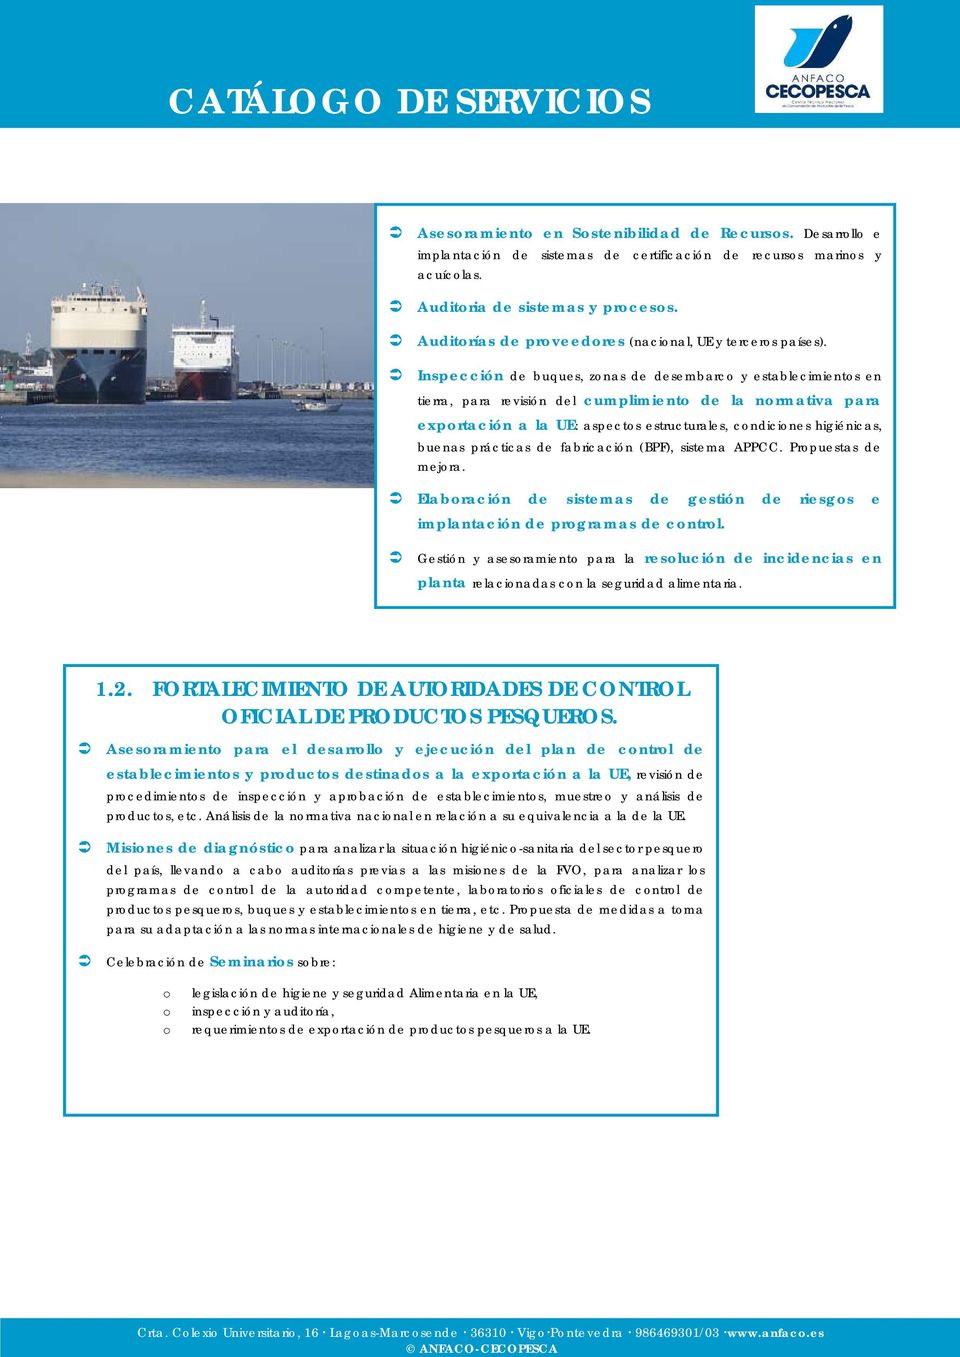 Inspección de buques, zonas de desembarco y establecimientos en tierra, para revisión del cumplimiento de la normativa para exportación a la UE: aspectos estructurales, condiciones higiénicas, buenas